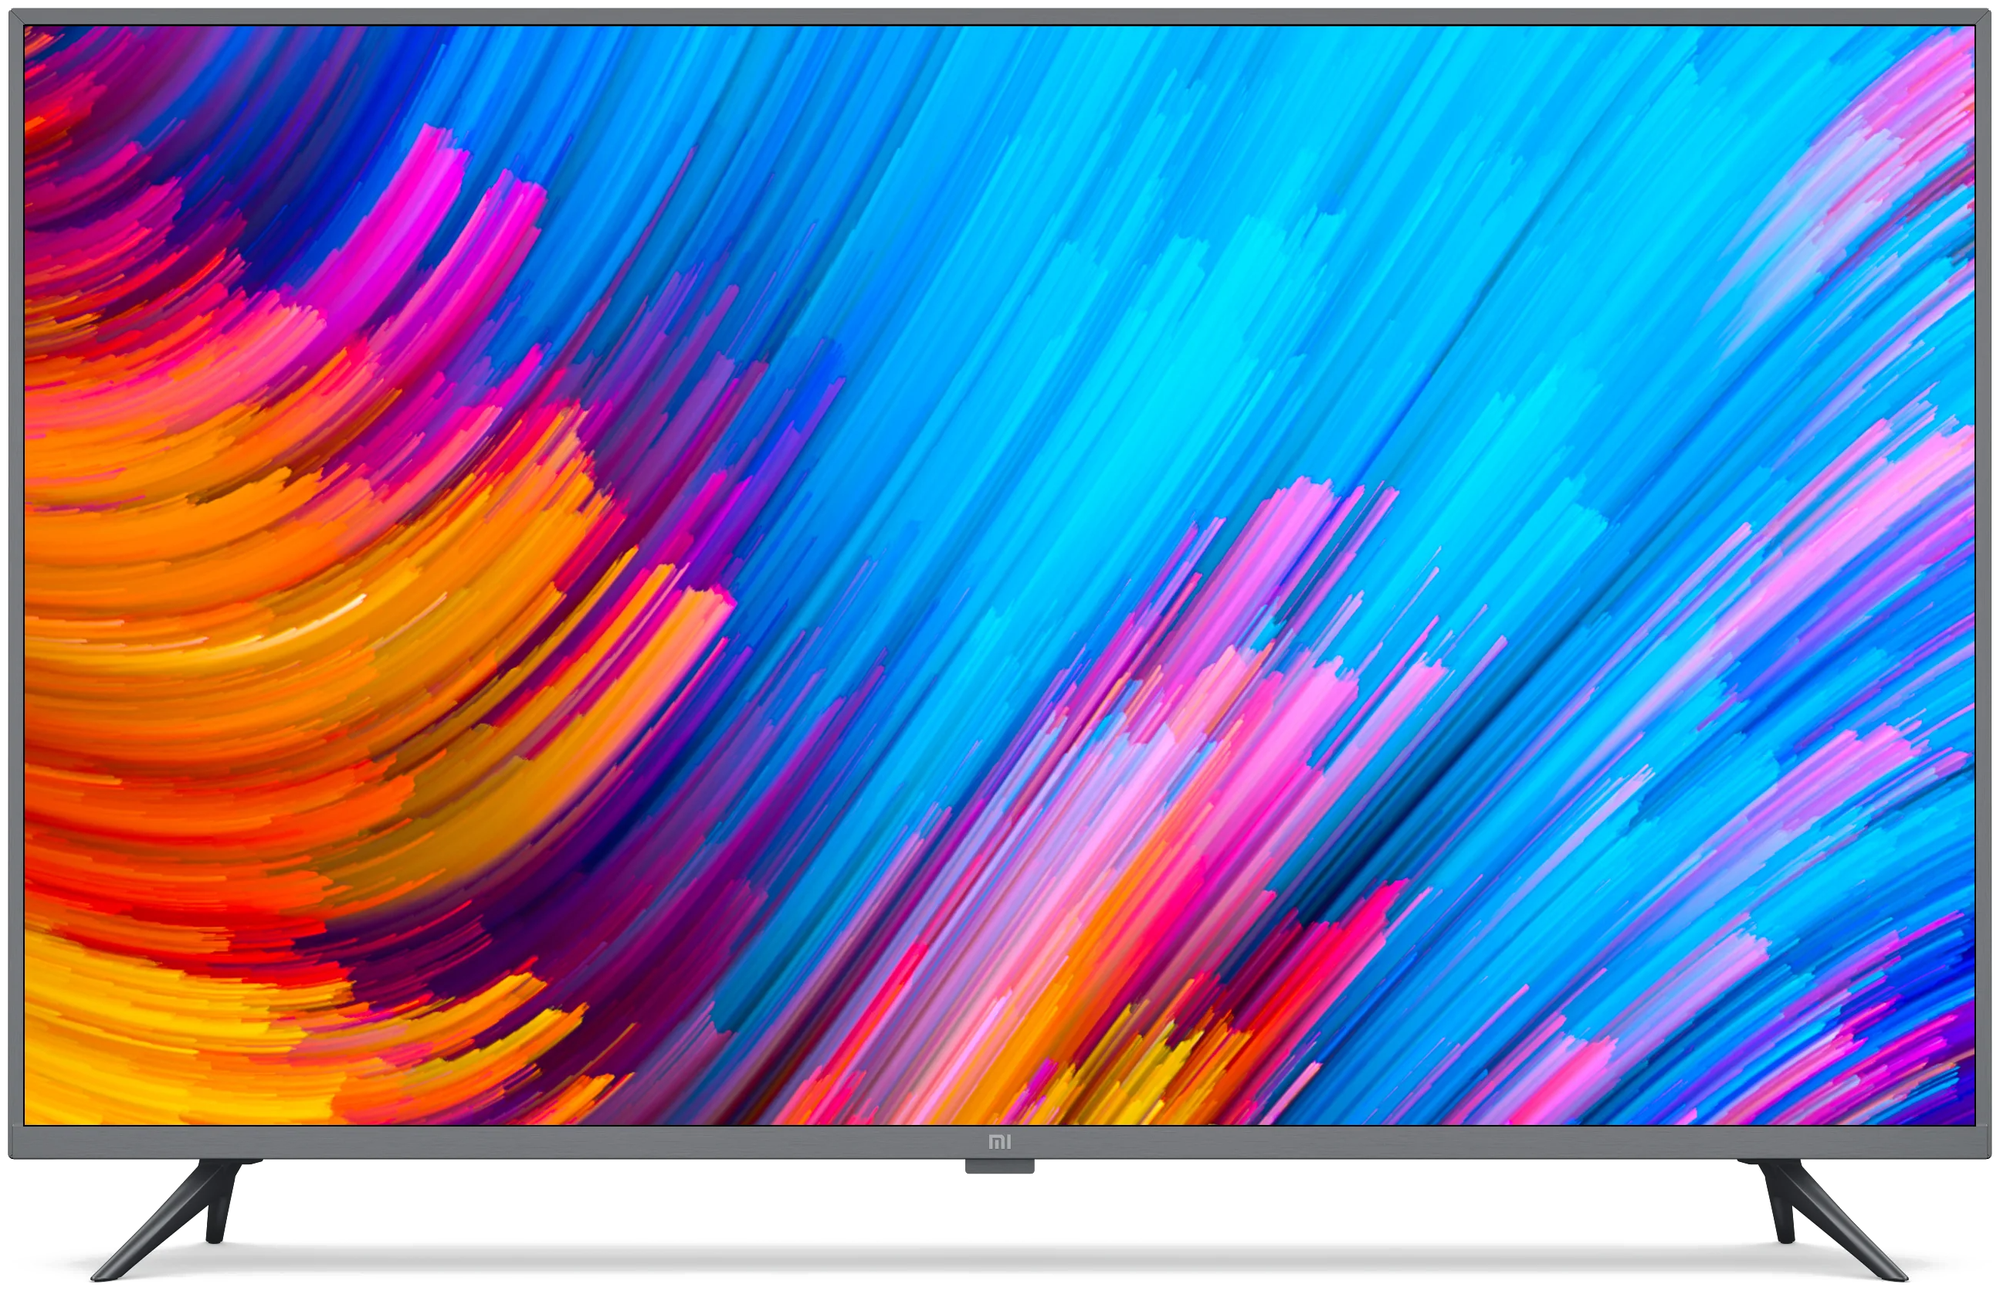 50" Телевизор Xiaomi Mi TV 4S 50 T2 2018 LED, HDR Global, стальной